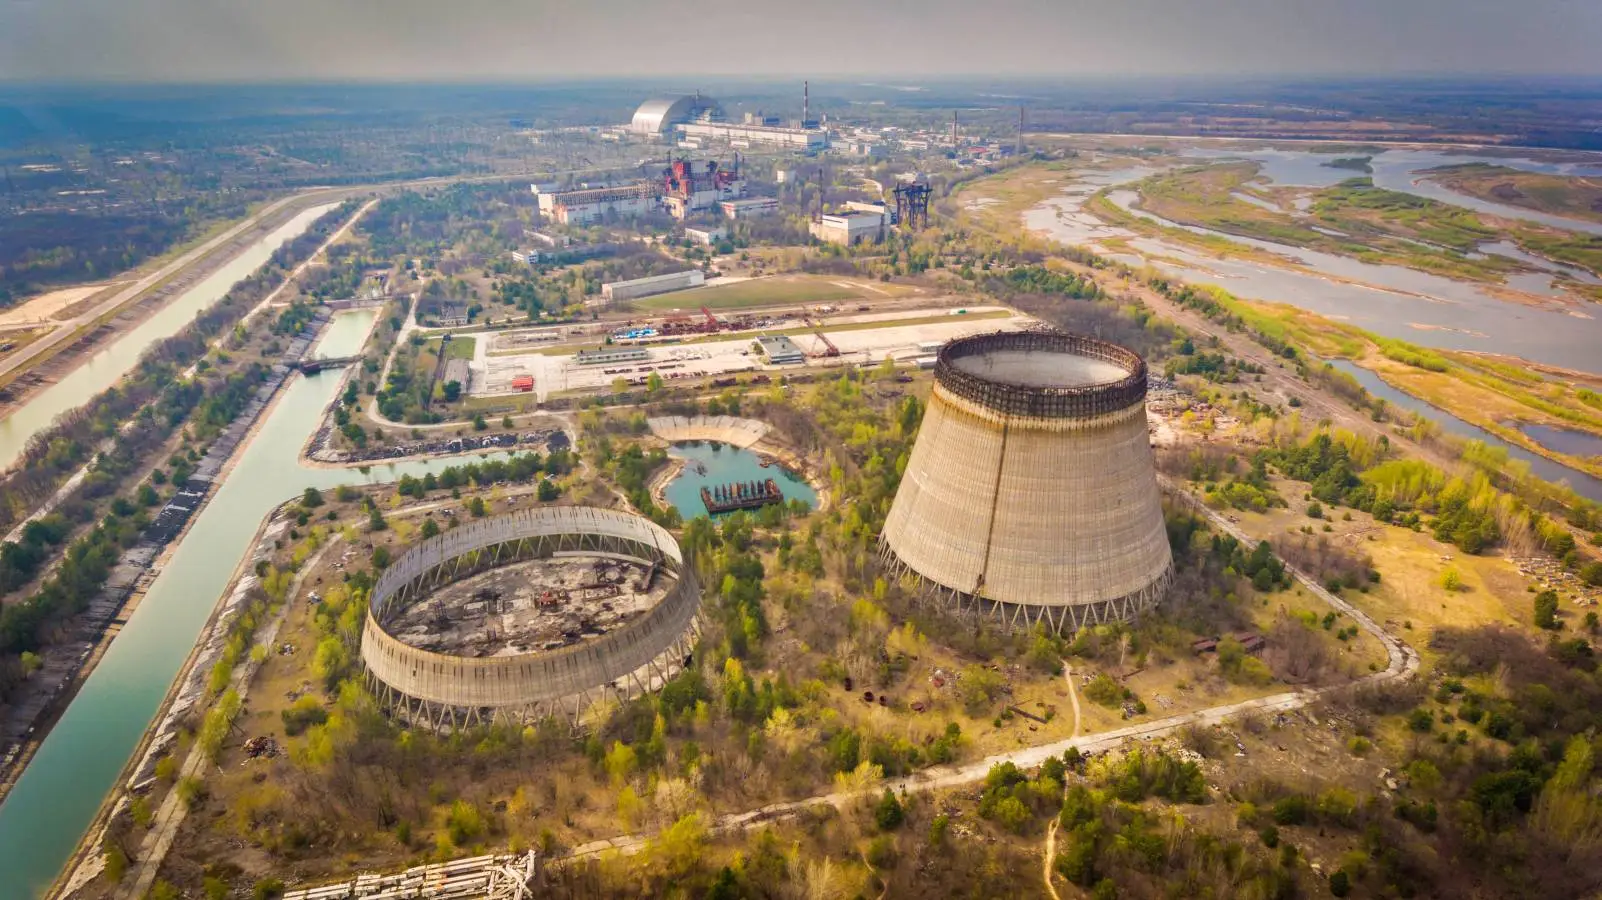 Rosja zbombardowała elektrownię jądrową w Zaporożu zaledwie 300 metrów od reaktorów jądrowych